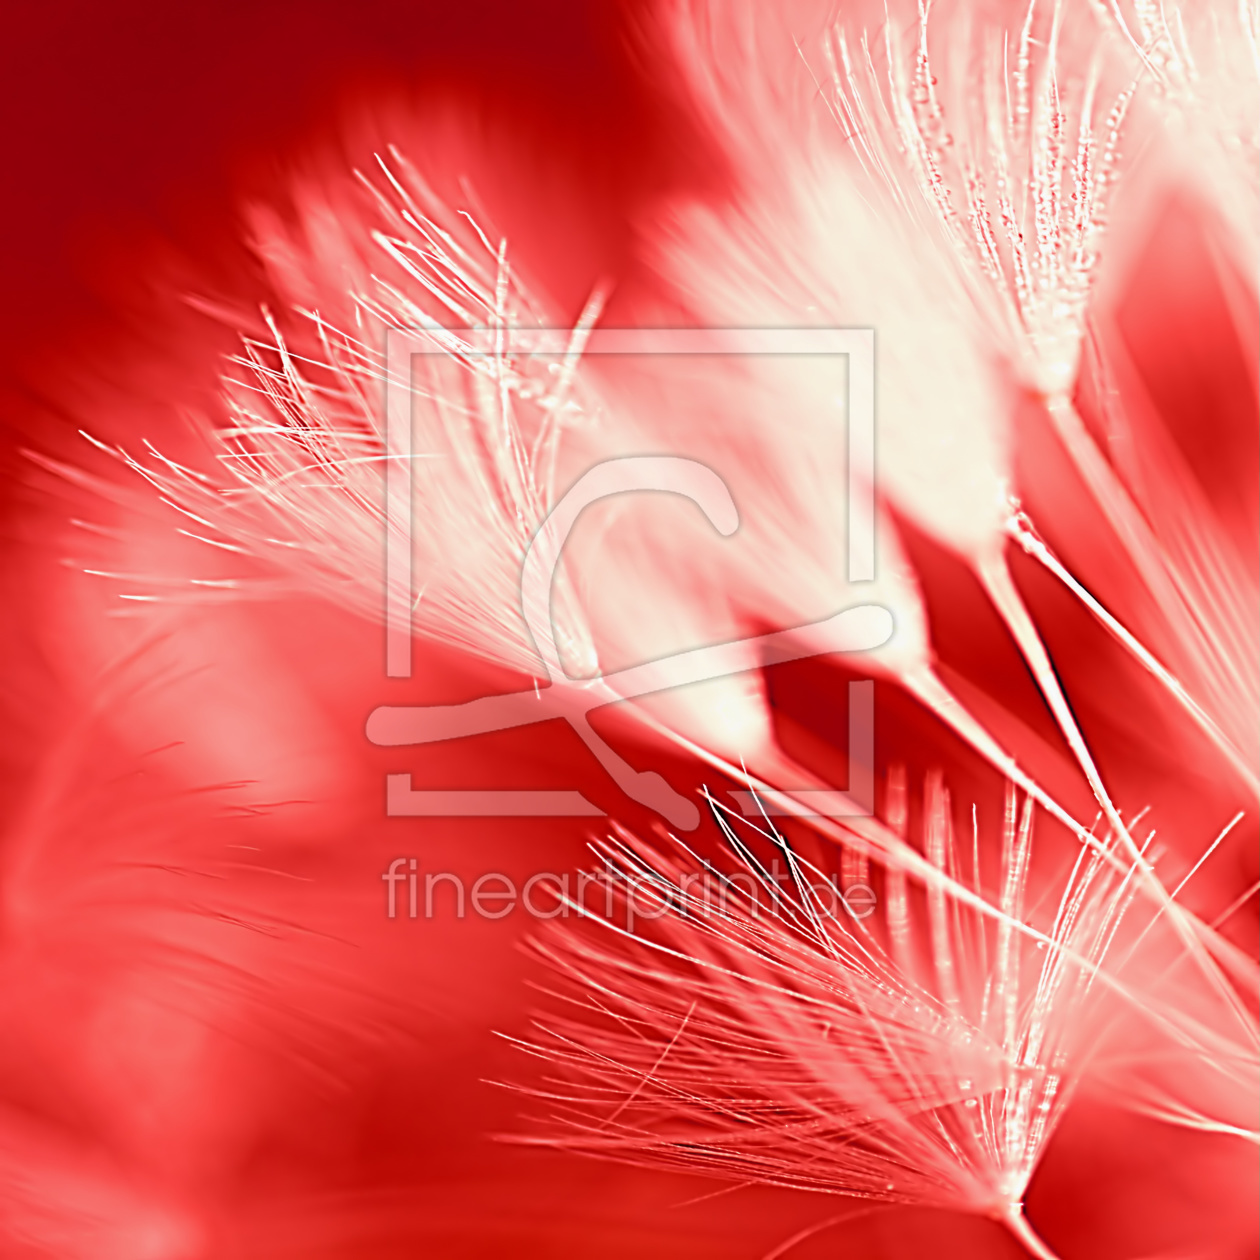 Bild-Nr.: 10535377 Red Lions erstellt von youhaveadream